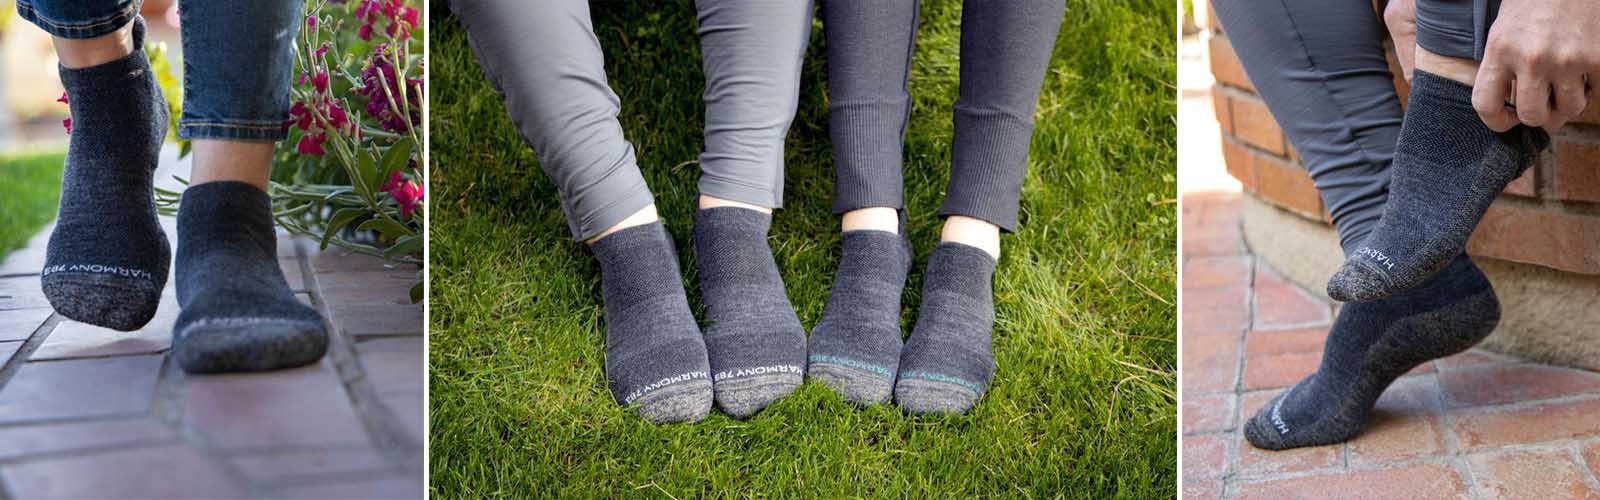 Grounding-Earthing-Socks